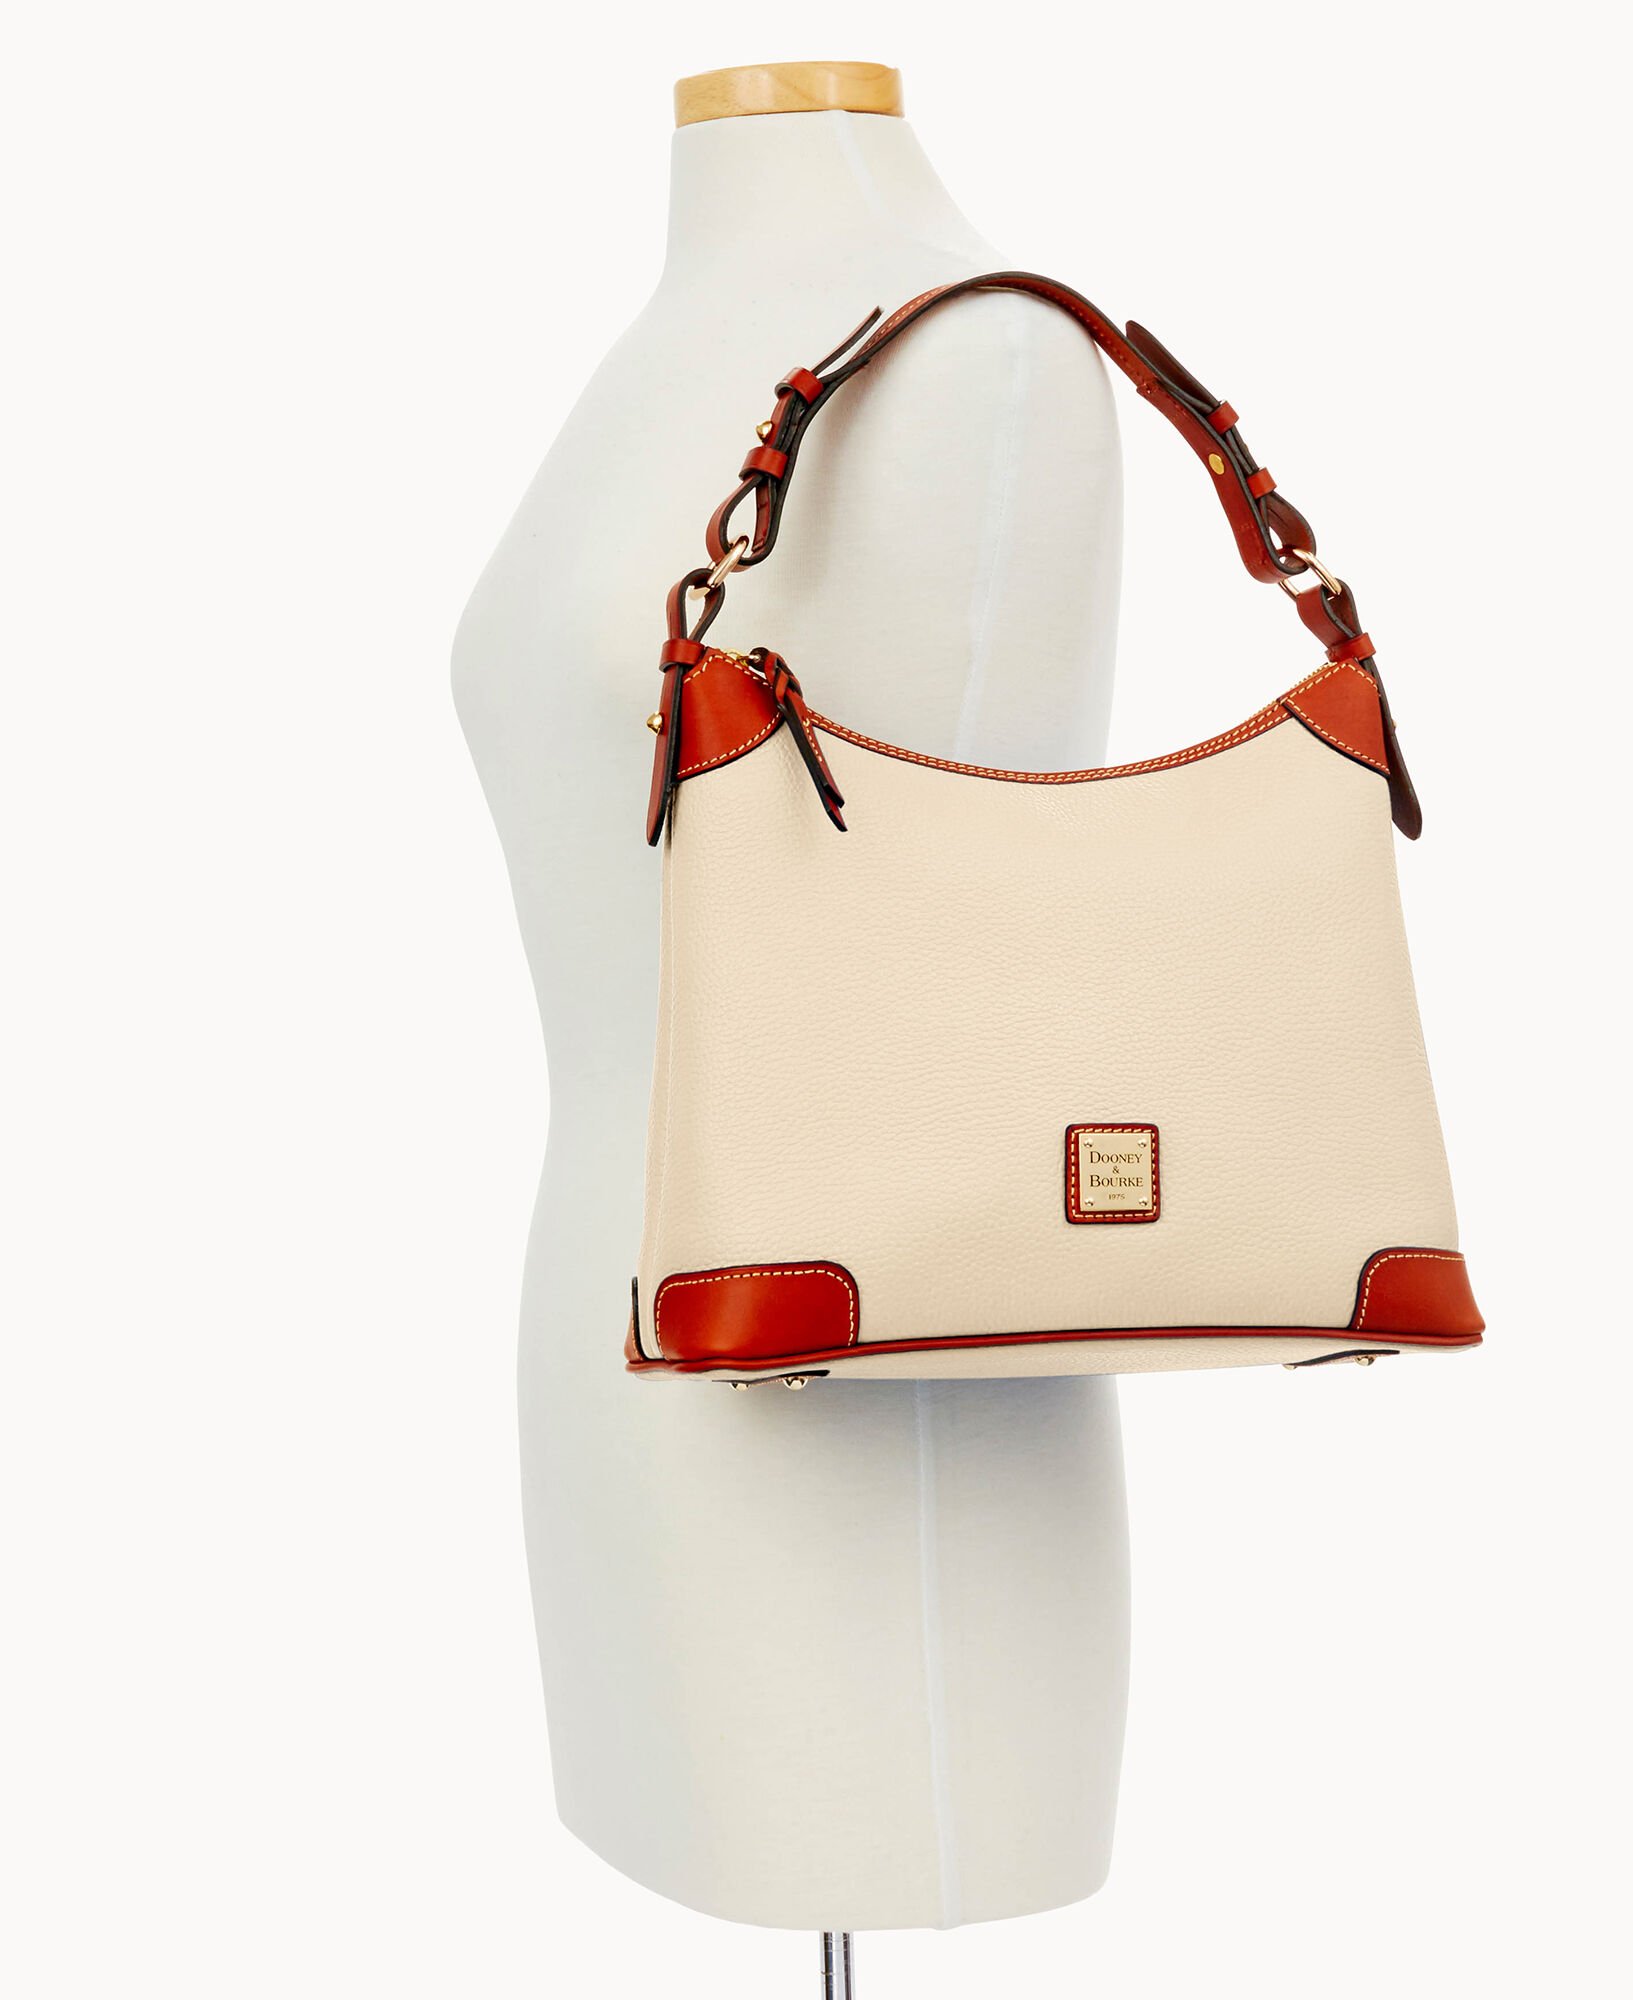 How to Make a Designer Inspired Hobo Sling Bag 